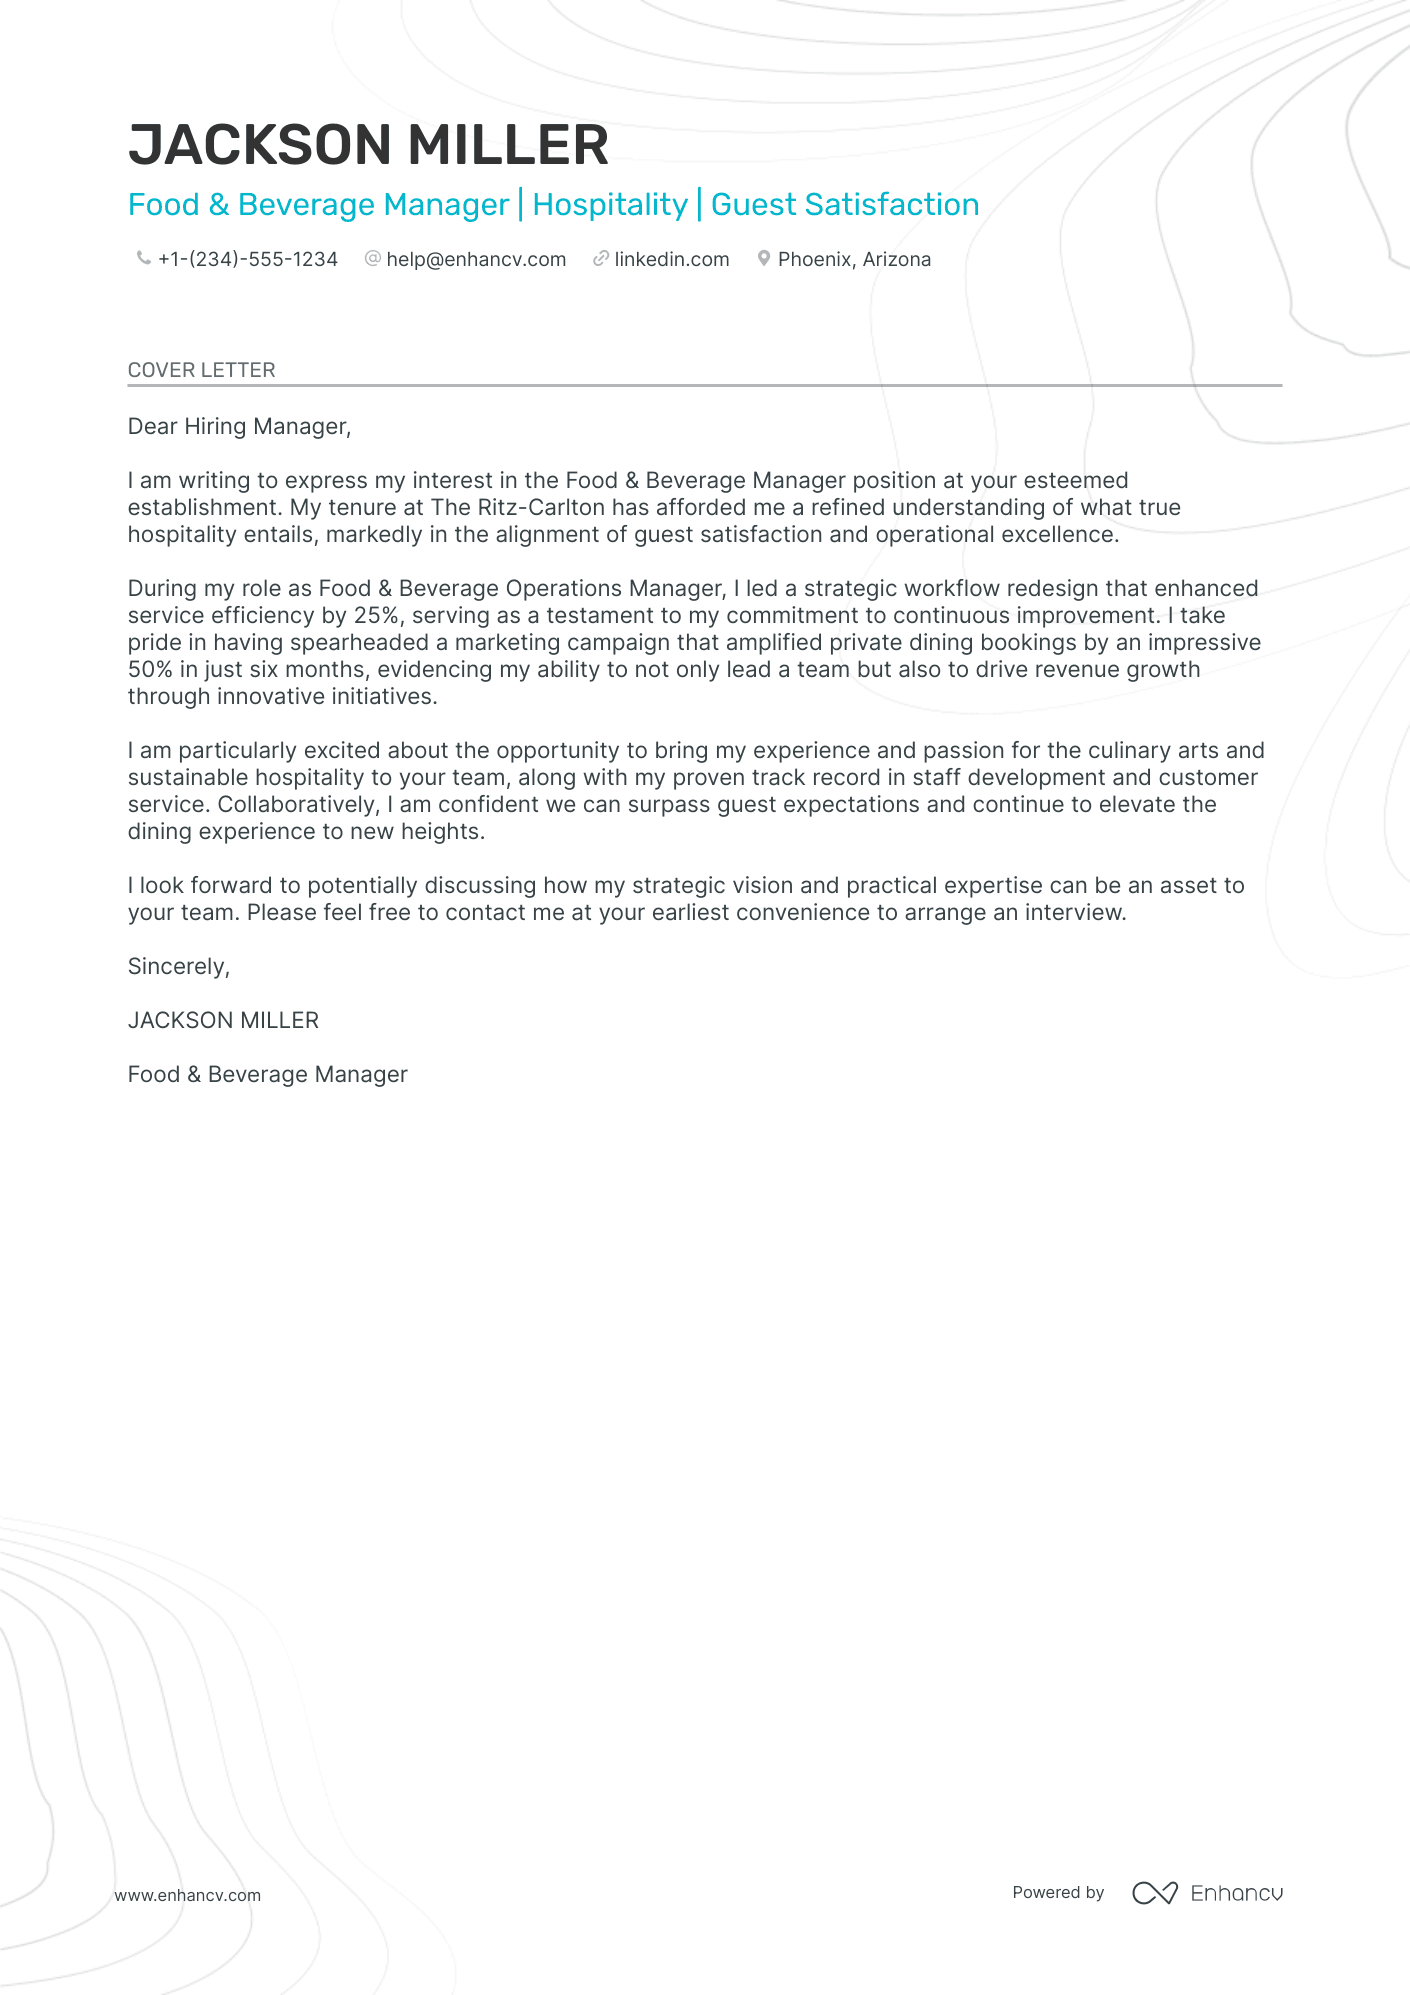 cover letter for manager restaurant